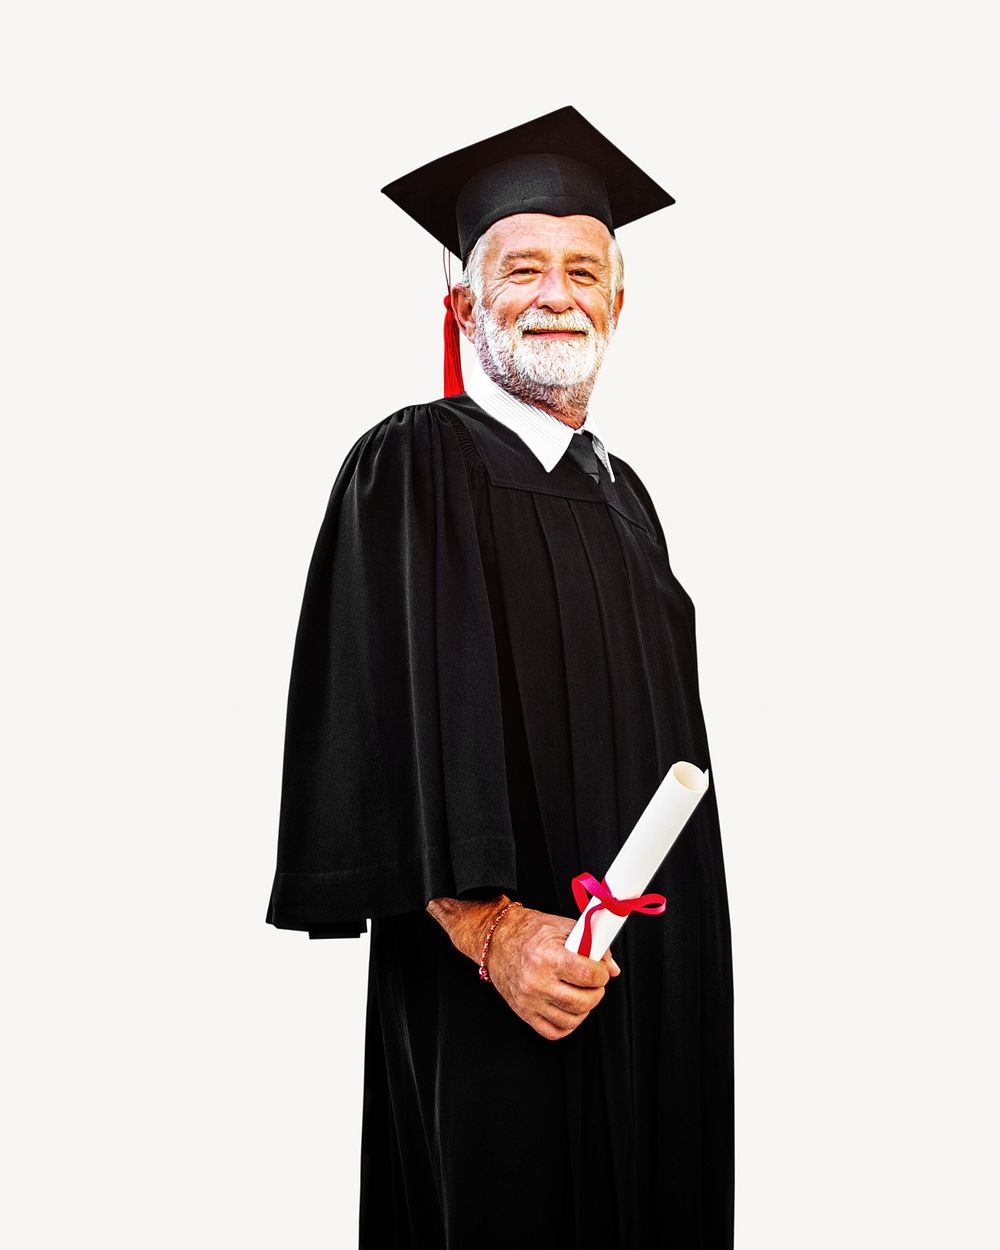 Senior man graduate isolated image on white